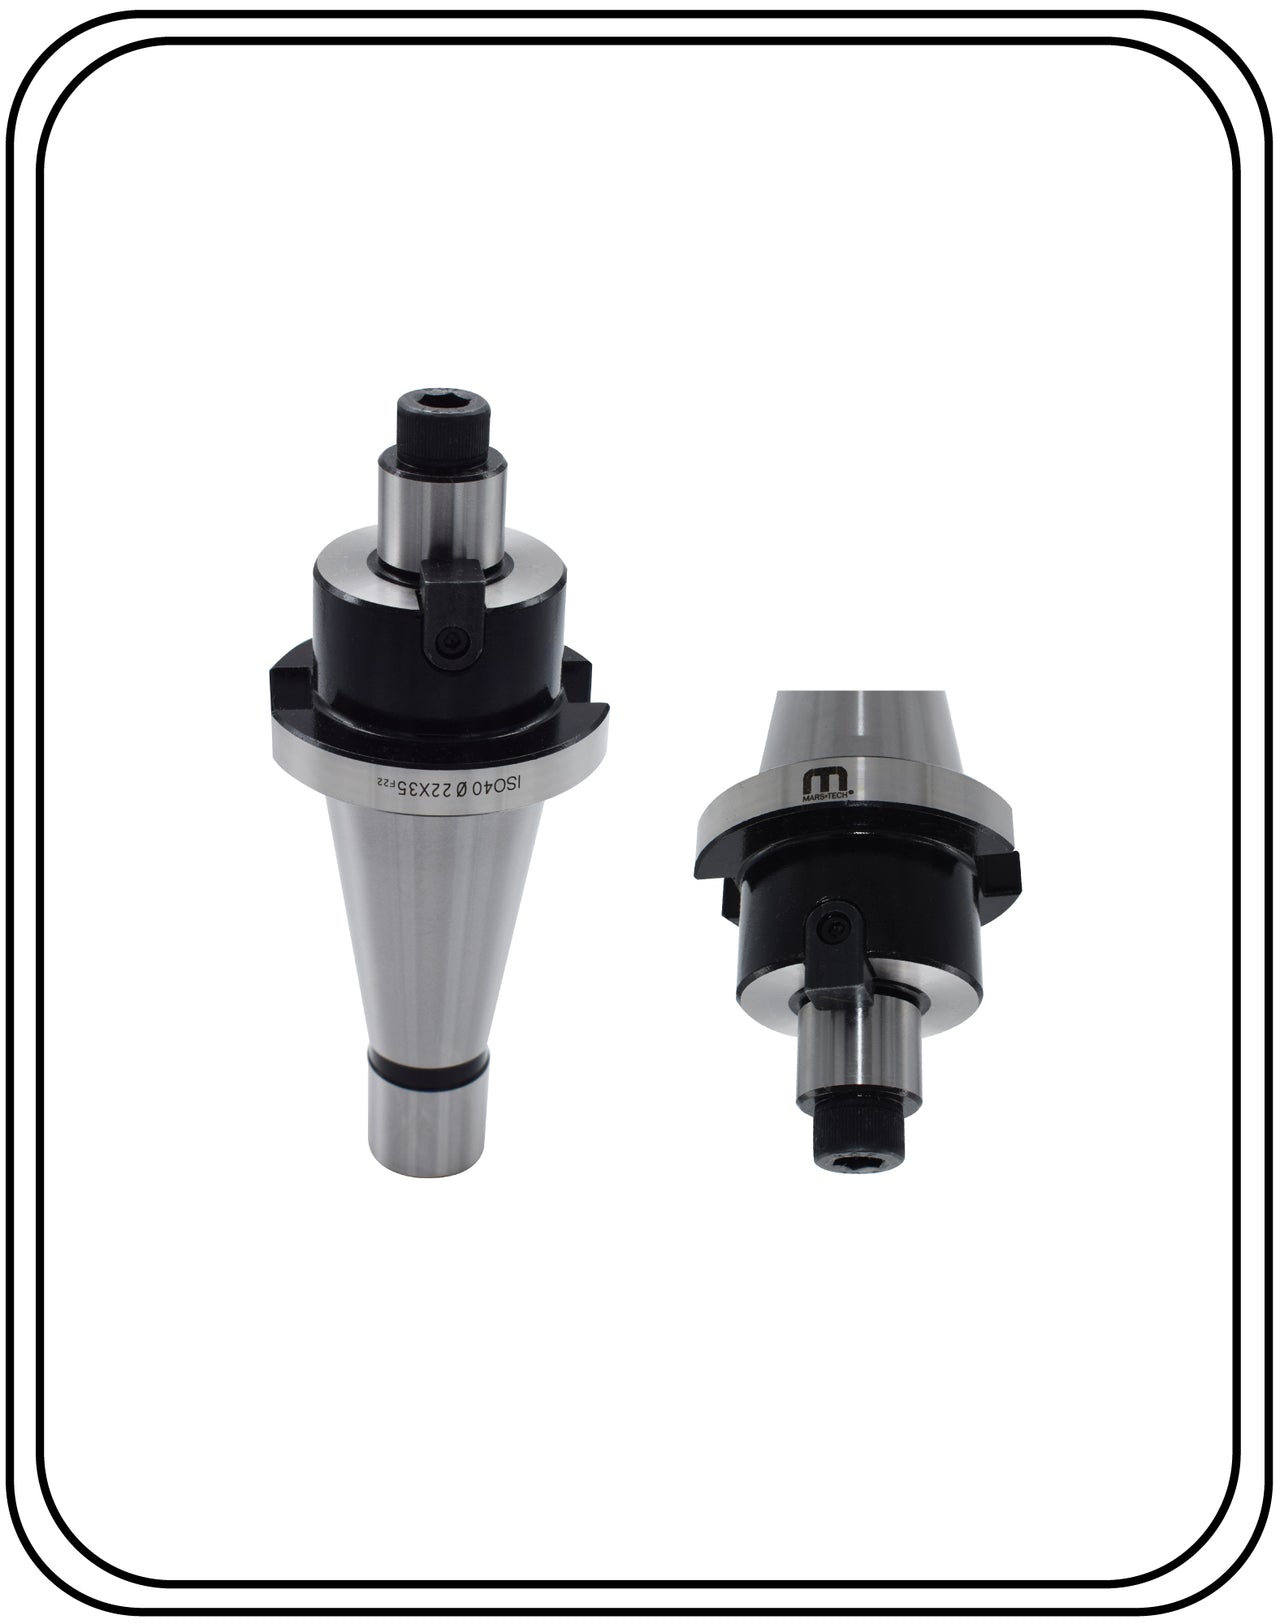 ISO 40 Holder face mill arbor adaptor